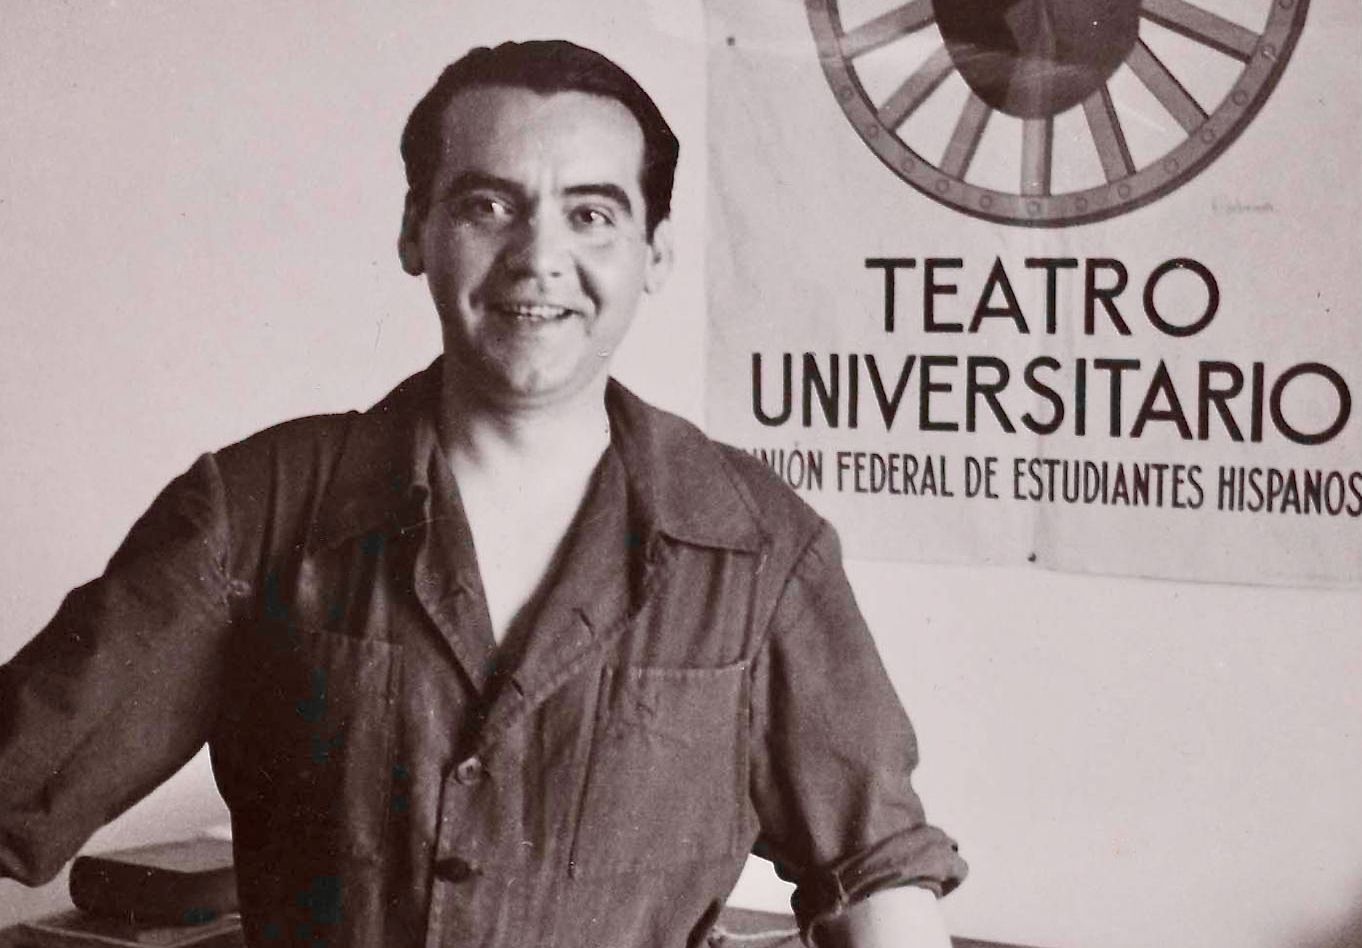 Mis uw afspraak niet met deze warme, goedlachse man, die heel wat te vertellen heeft over het leven en hoe het te leven: geliefde dichter en theatermaker, Federico Garcia Lorca.